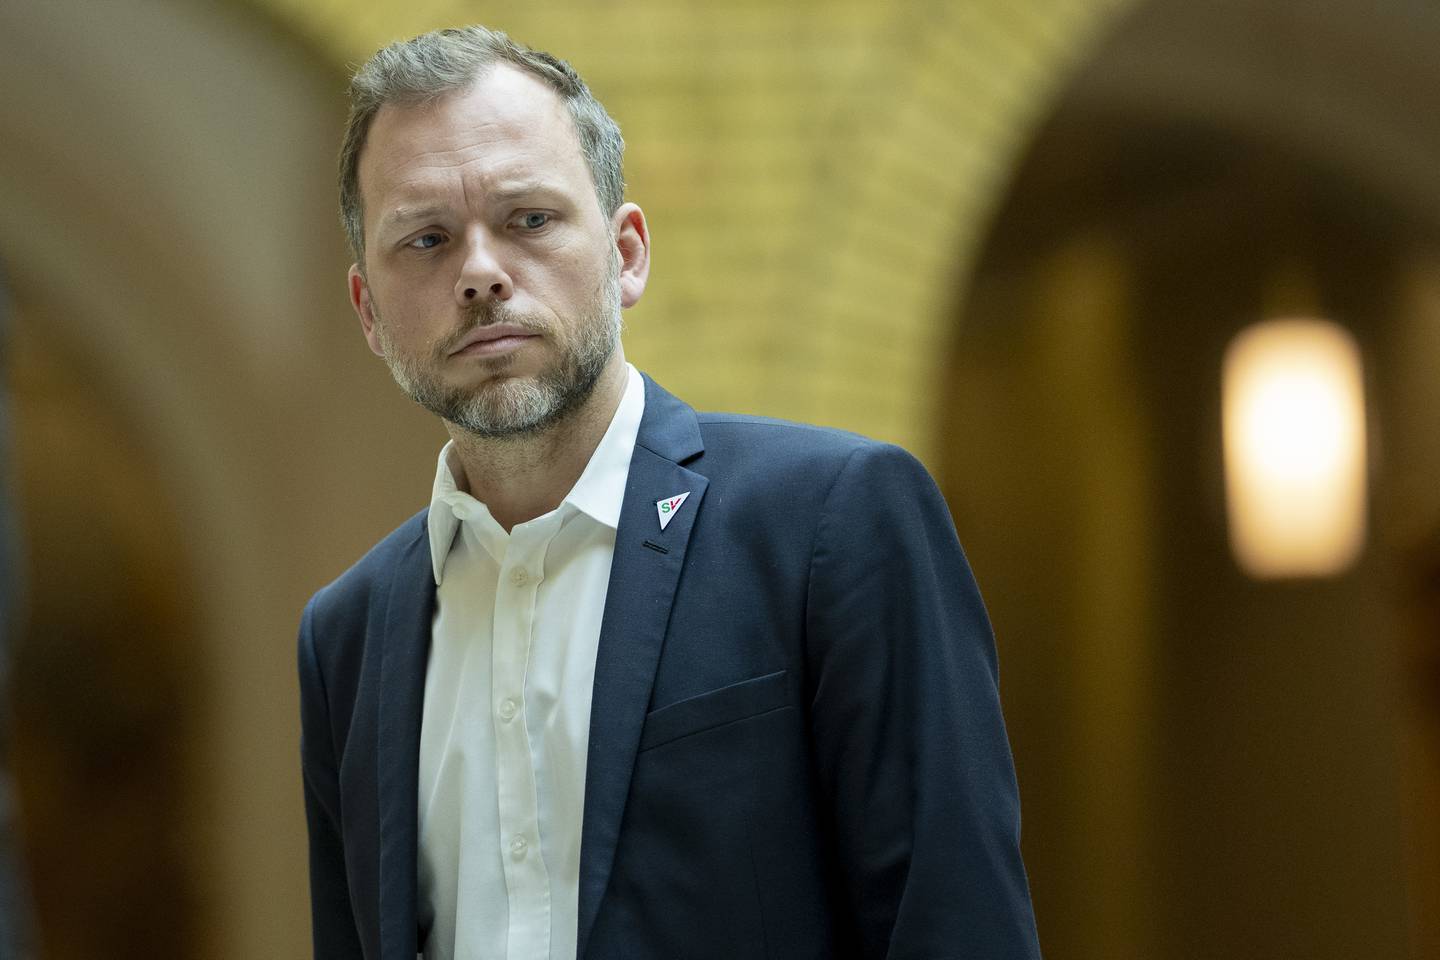 SV-leder Audun Lysbakken bønnfaller Ap om å si ja til rusreformen på landsmøtet i helgen. Foto: Fredrik Hagen / NTB